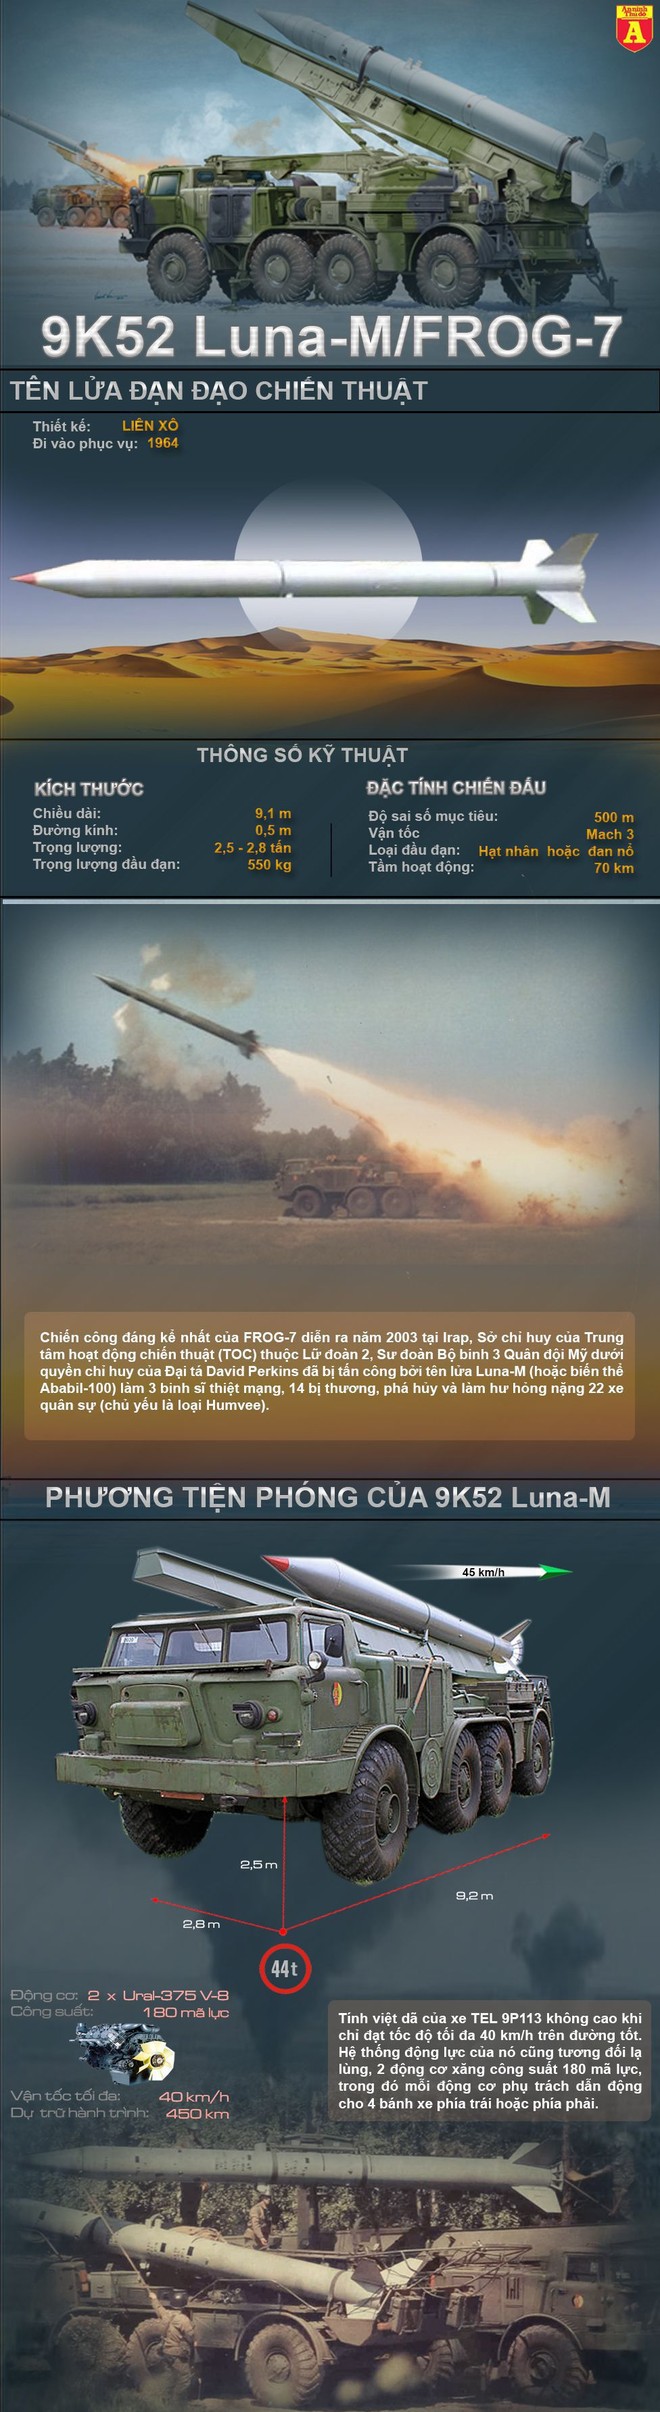 [Inforgraphic] 9K52 Luna-M - Tên lửa uy lực nhất của quân đội Cuba ảnh 1